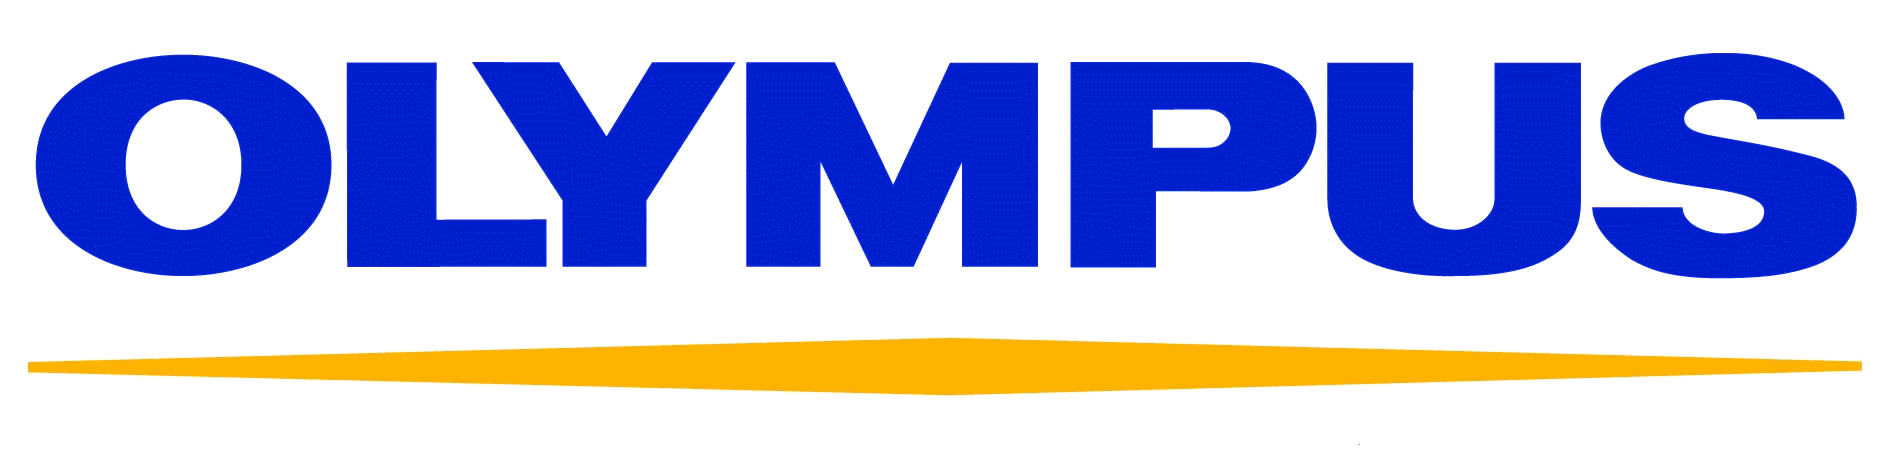 Olympus_logo